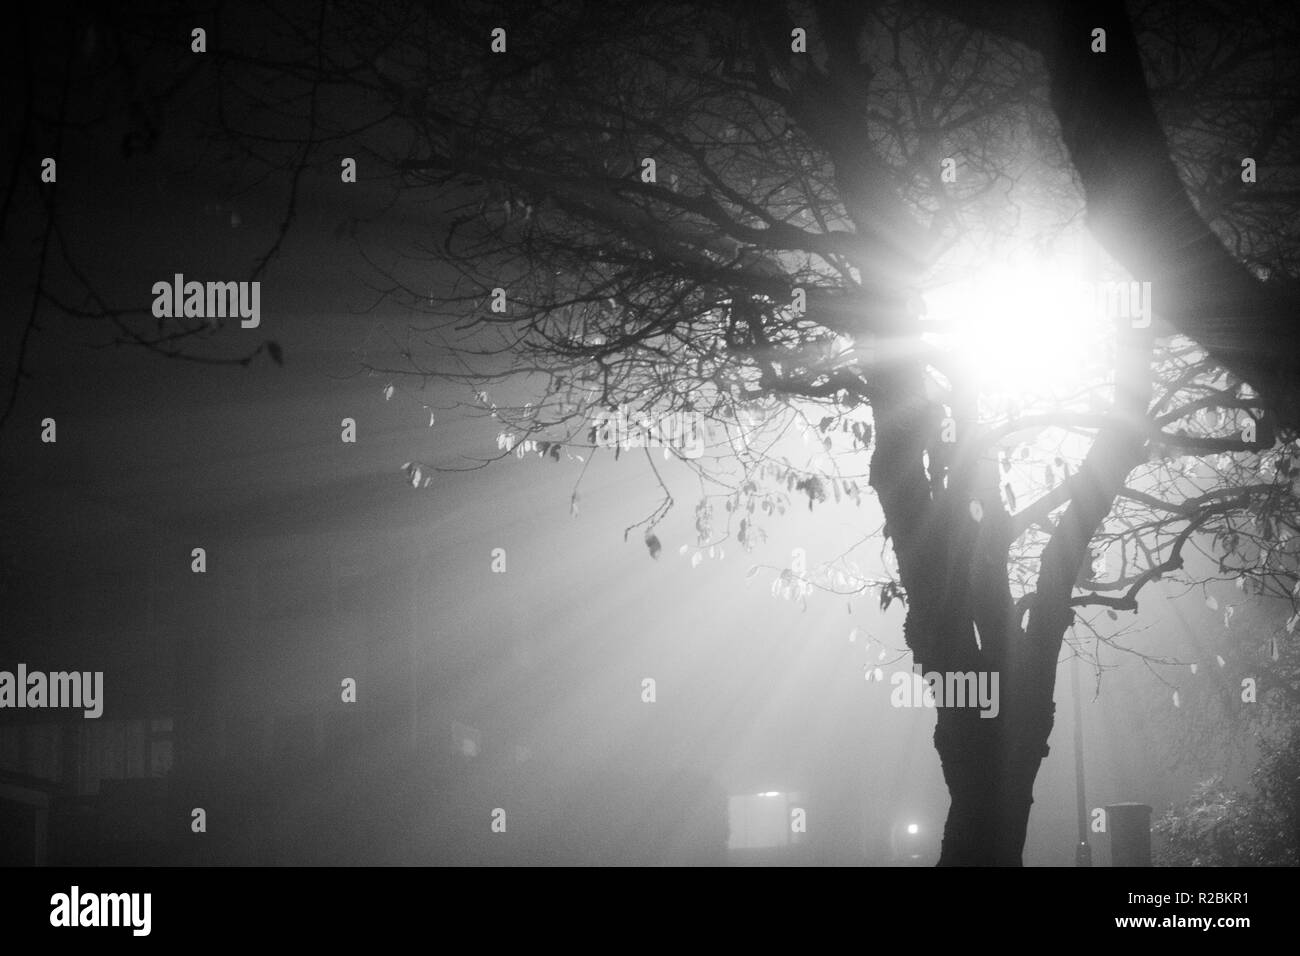 Árboles desnudos en una noche de invierno neblinoso en blanco y negro Foto de stock